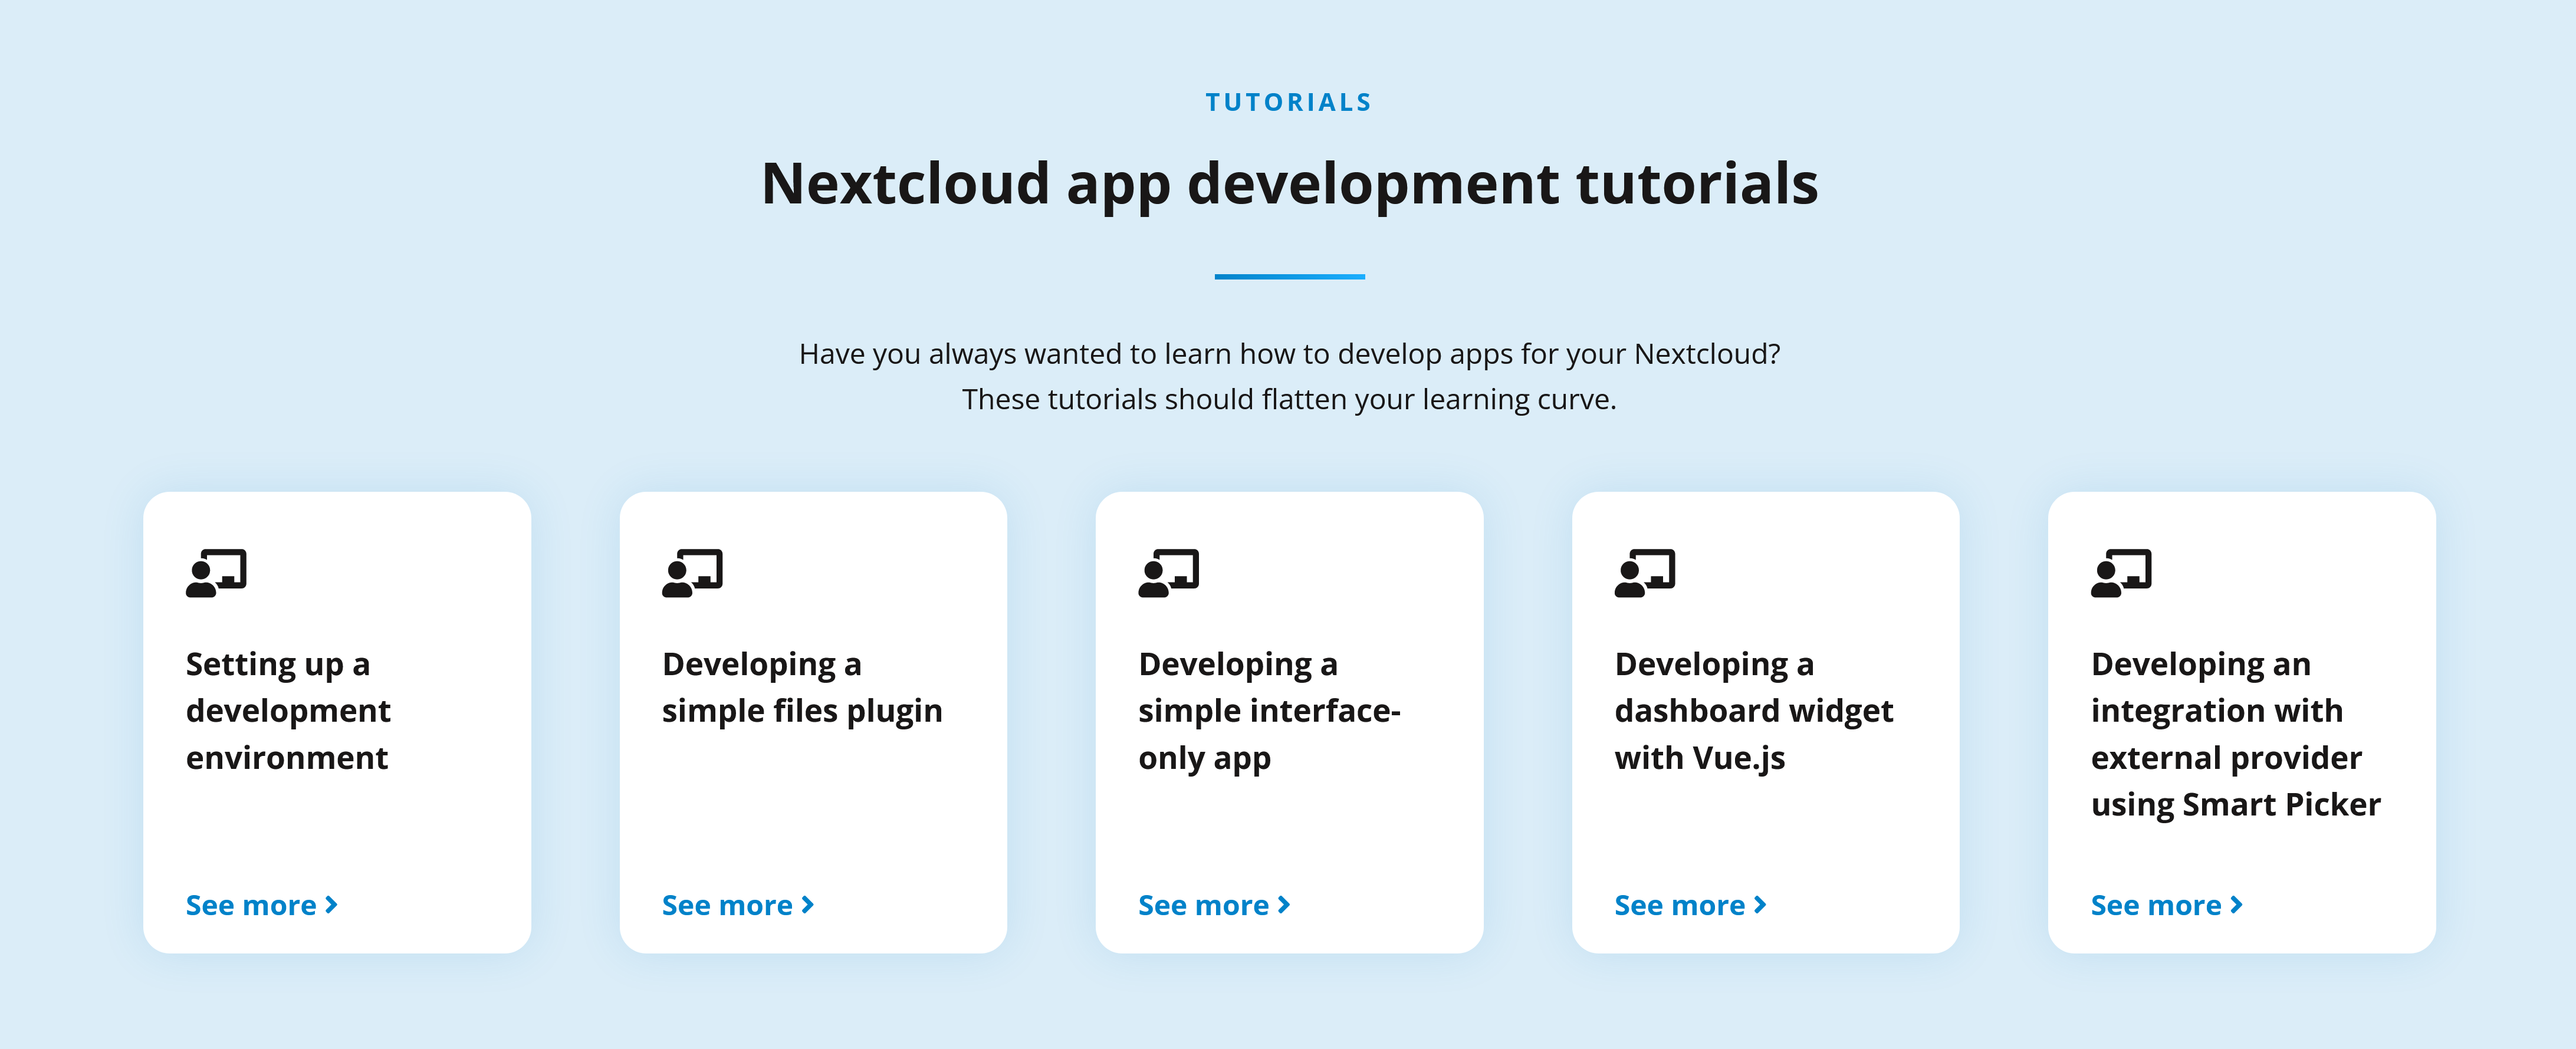 Tutoriales de desarrollo de aplicaciones Nextcloud